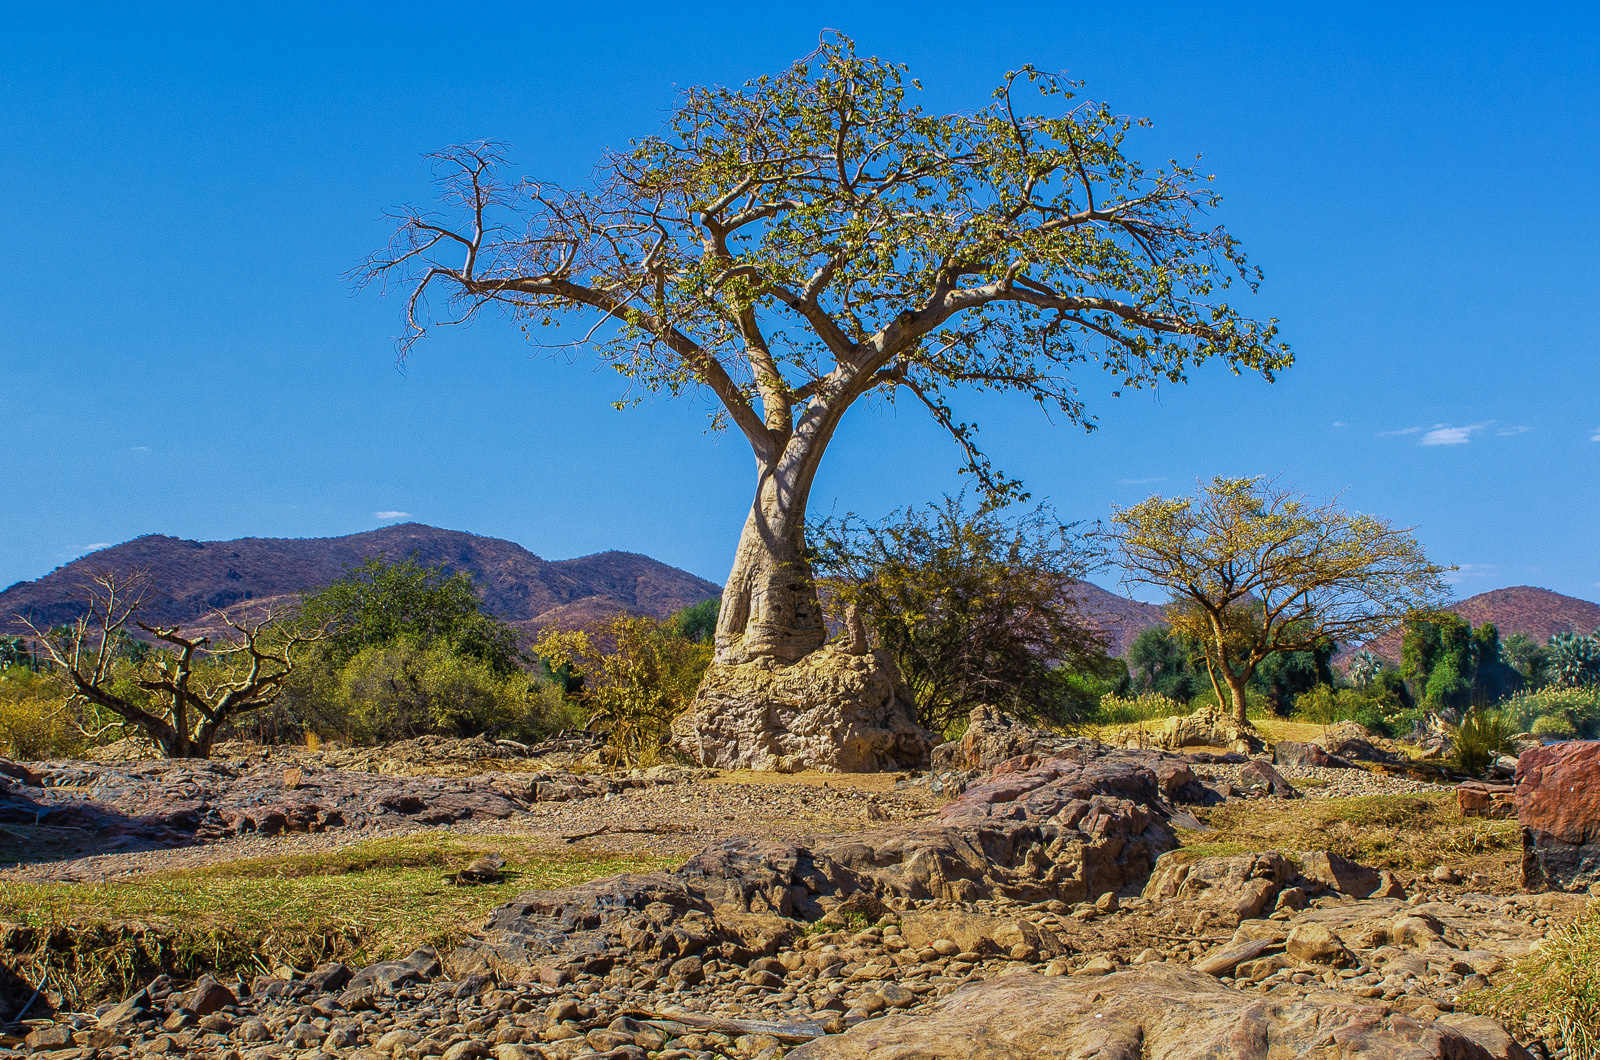 Namibian baobab...